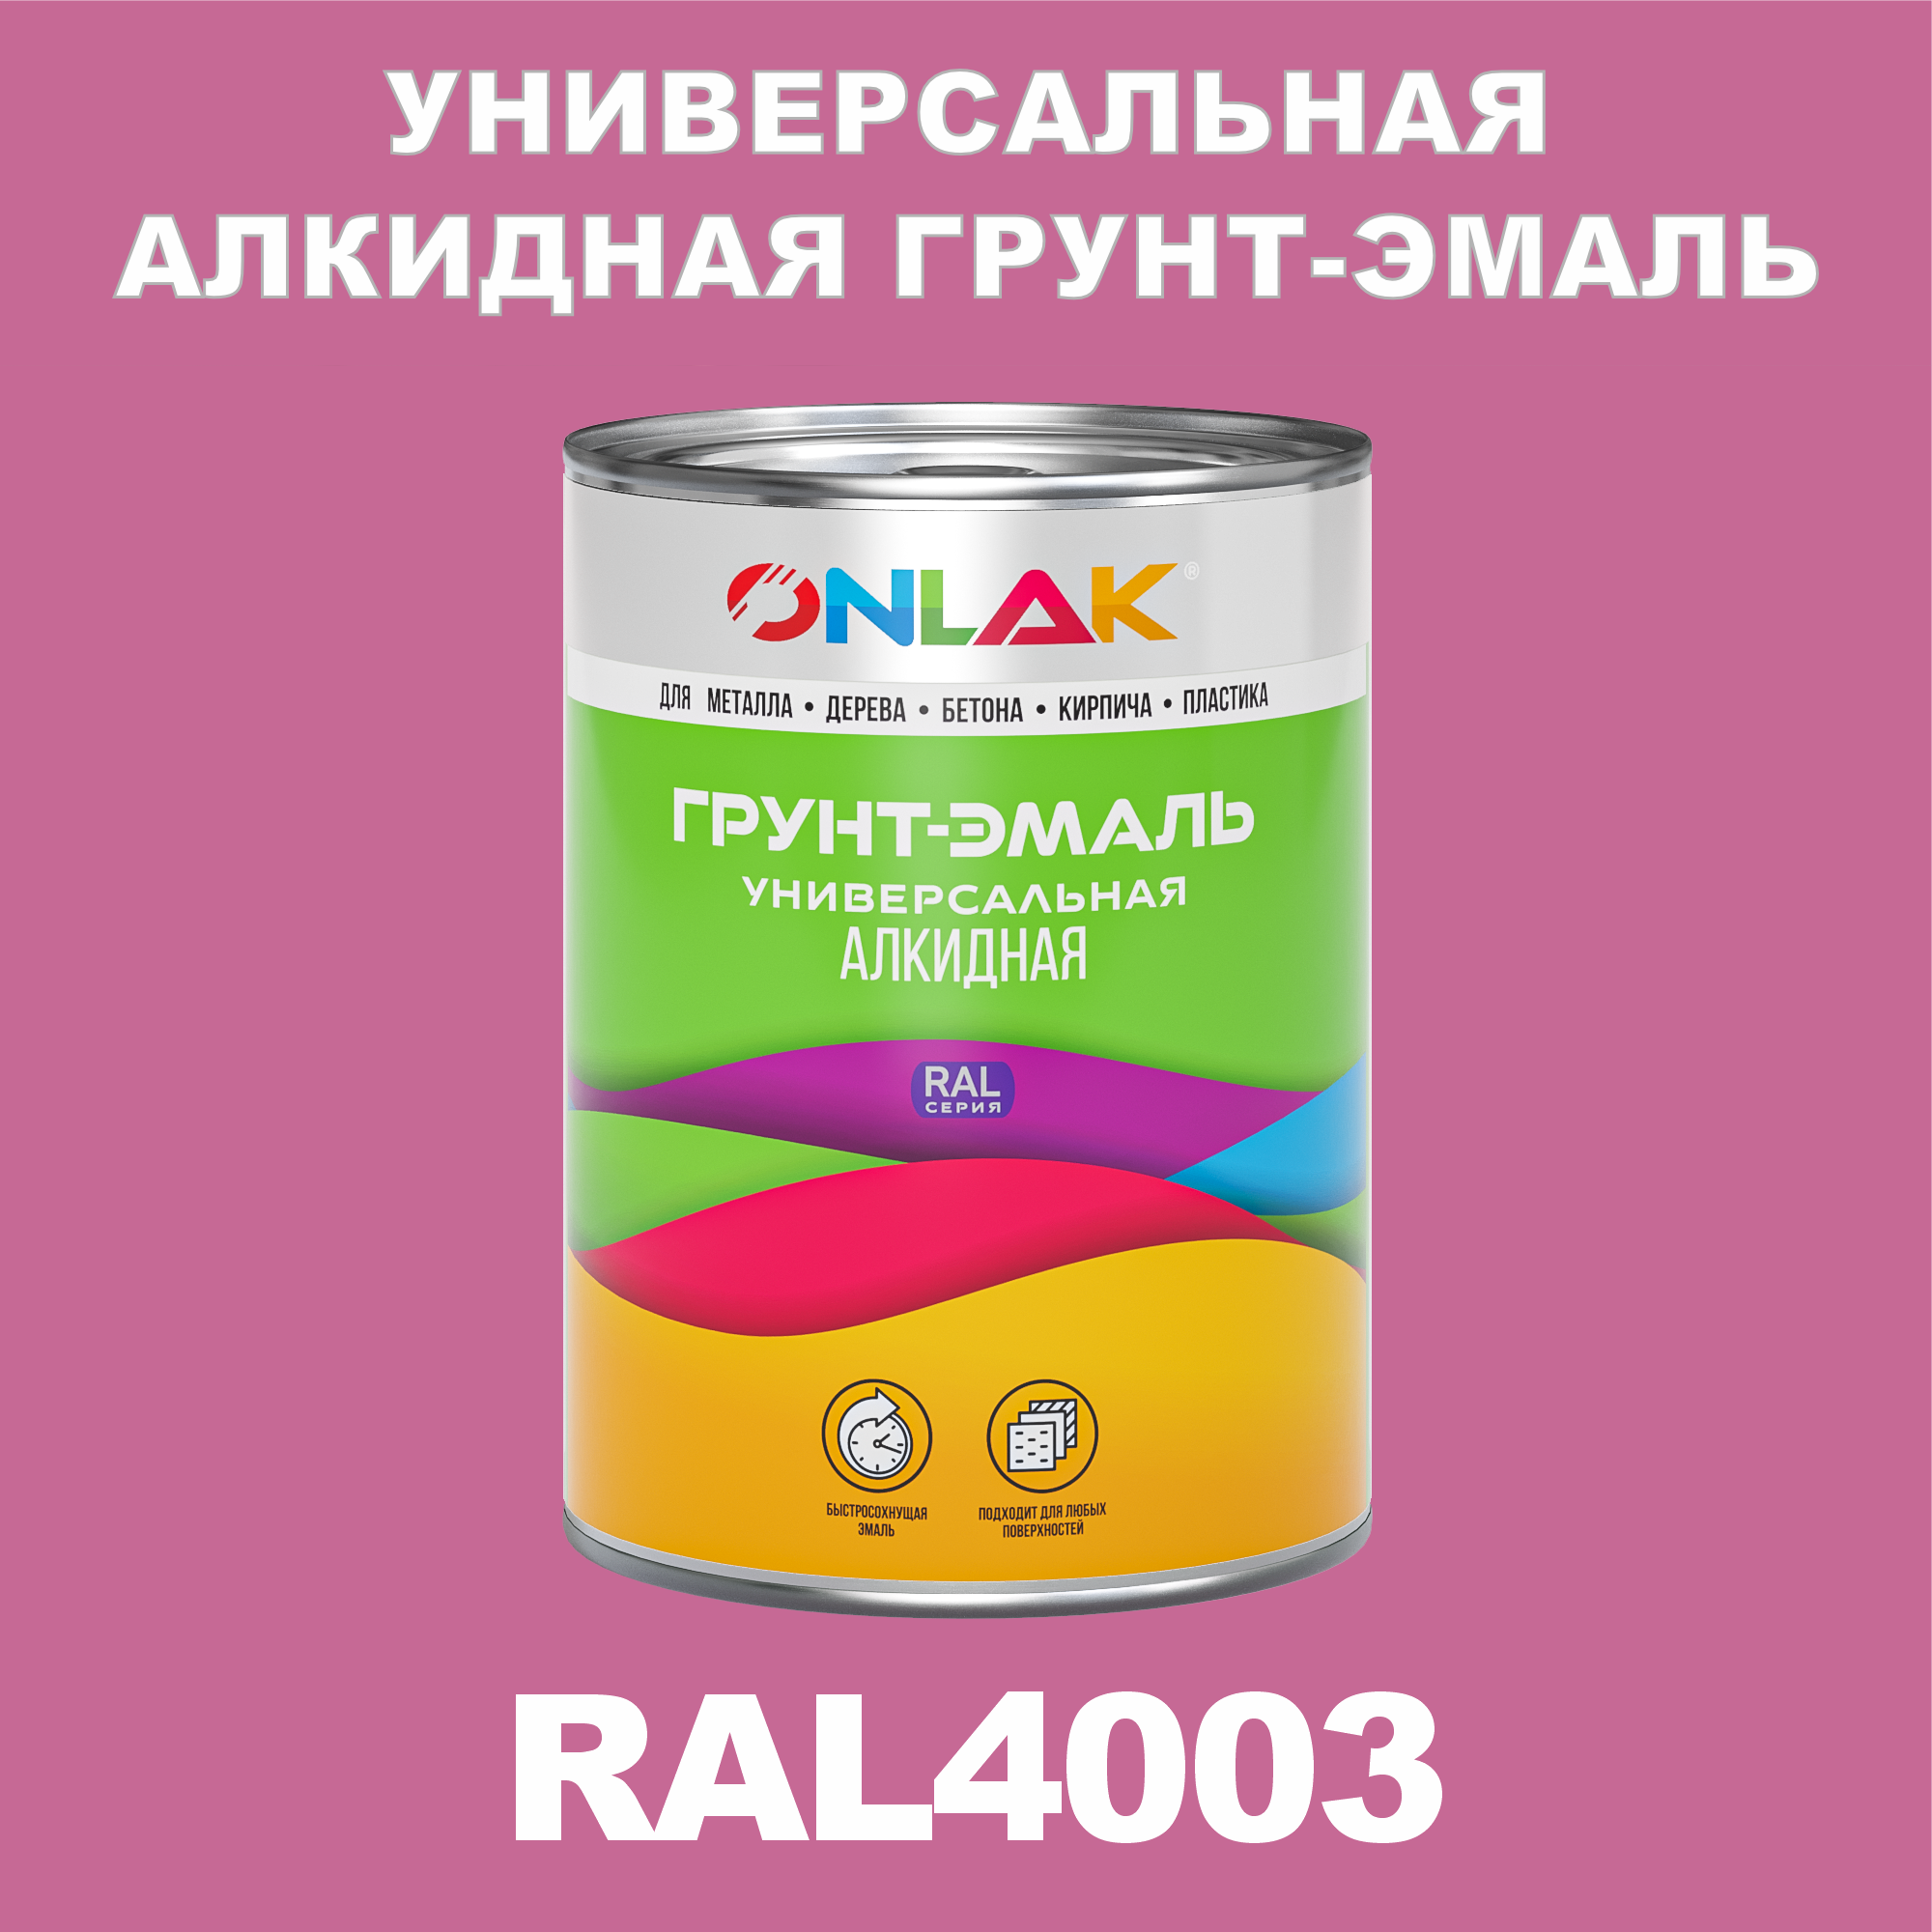 Грунт-эмаль ONLAK 1К RAL4003 антикоррозионная алкидная по металлу по ржавчине 1 кг